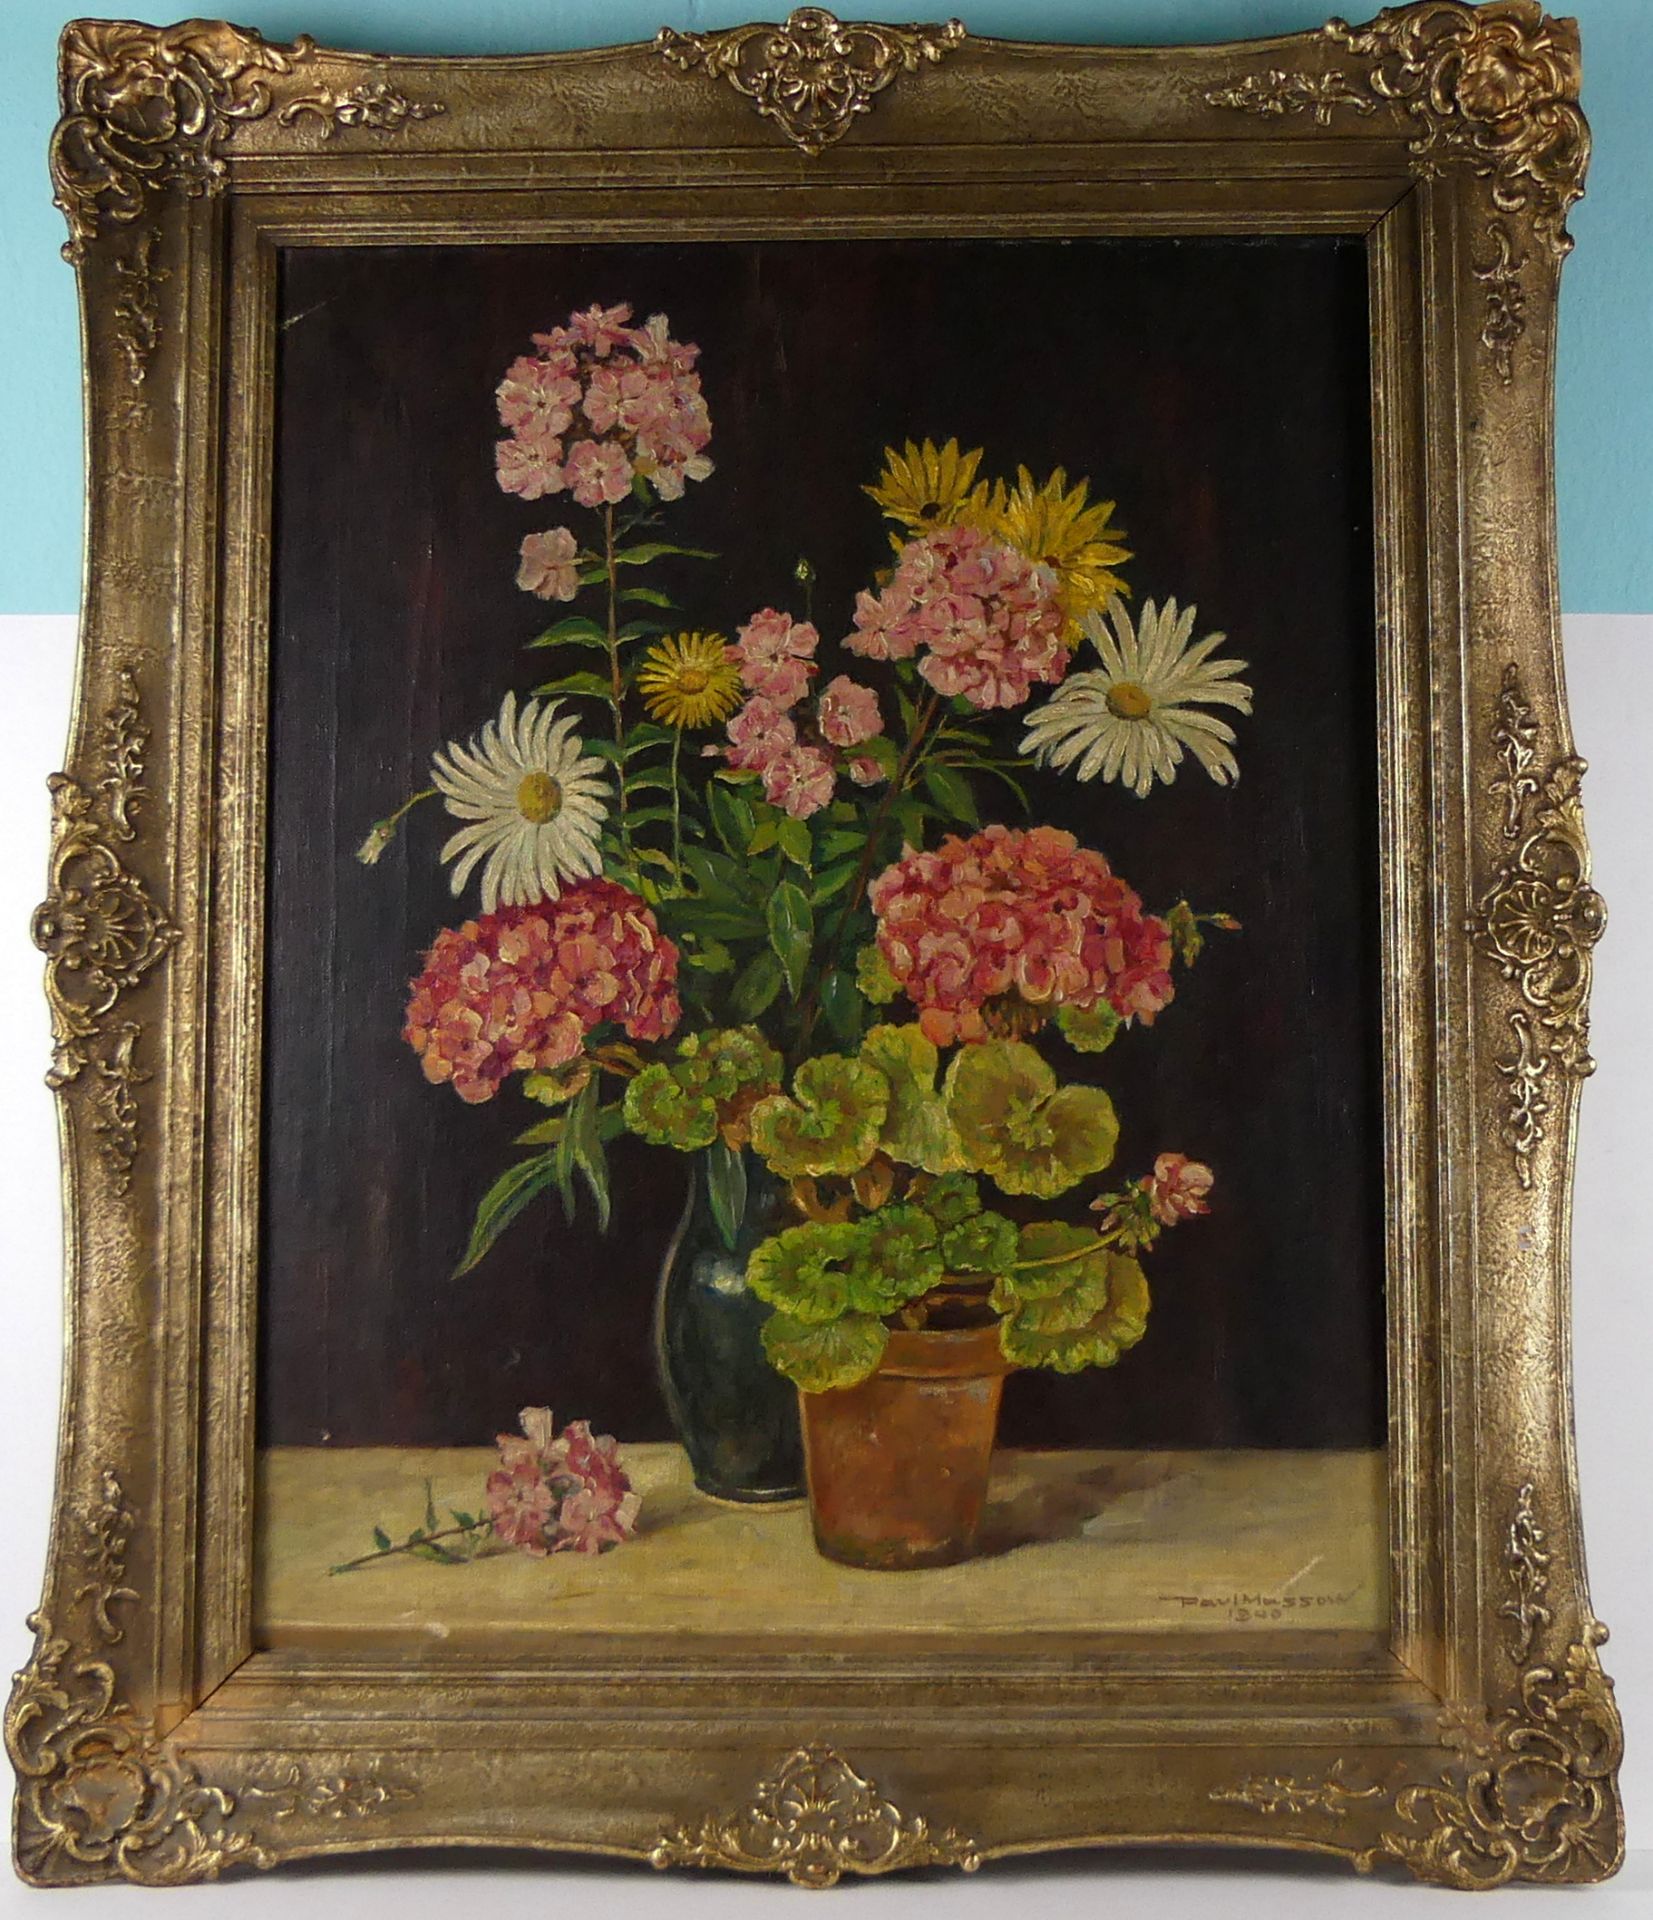 "Blumenbild", Öl/L., sig. PAUL MASSOW, dat. 1940, ca. 56 x 70 cm